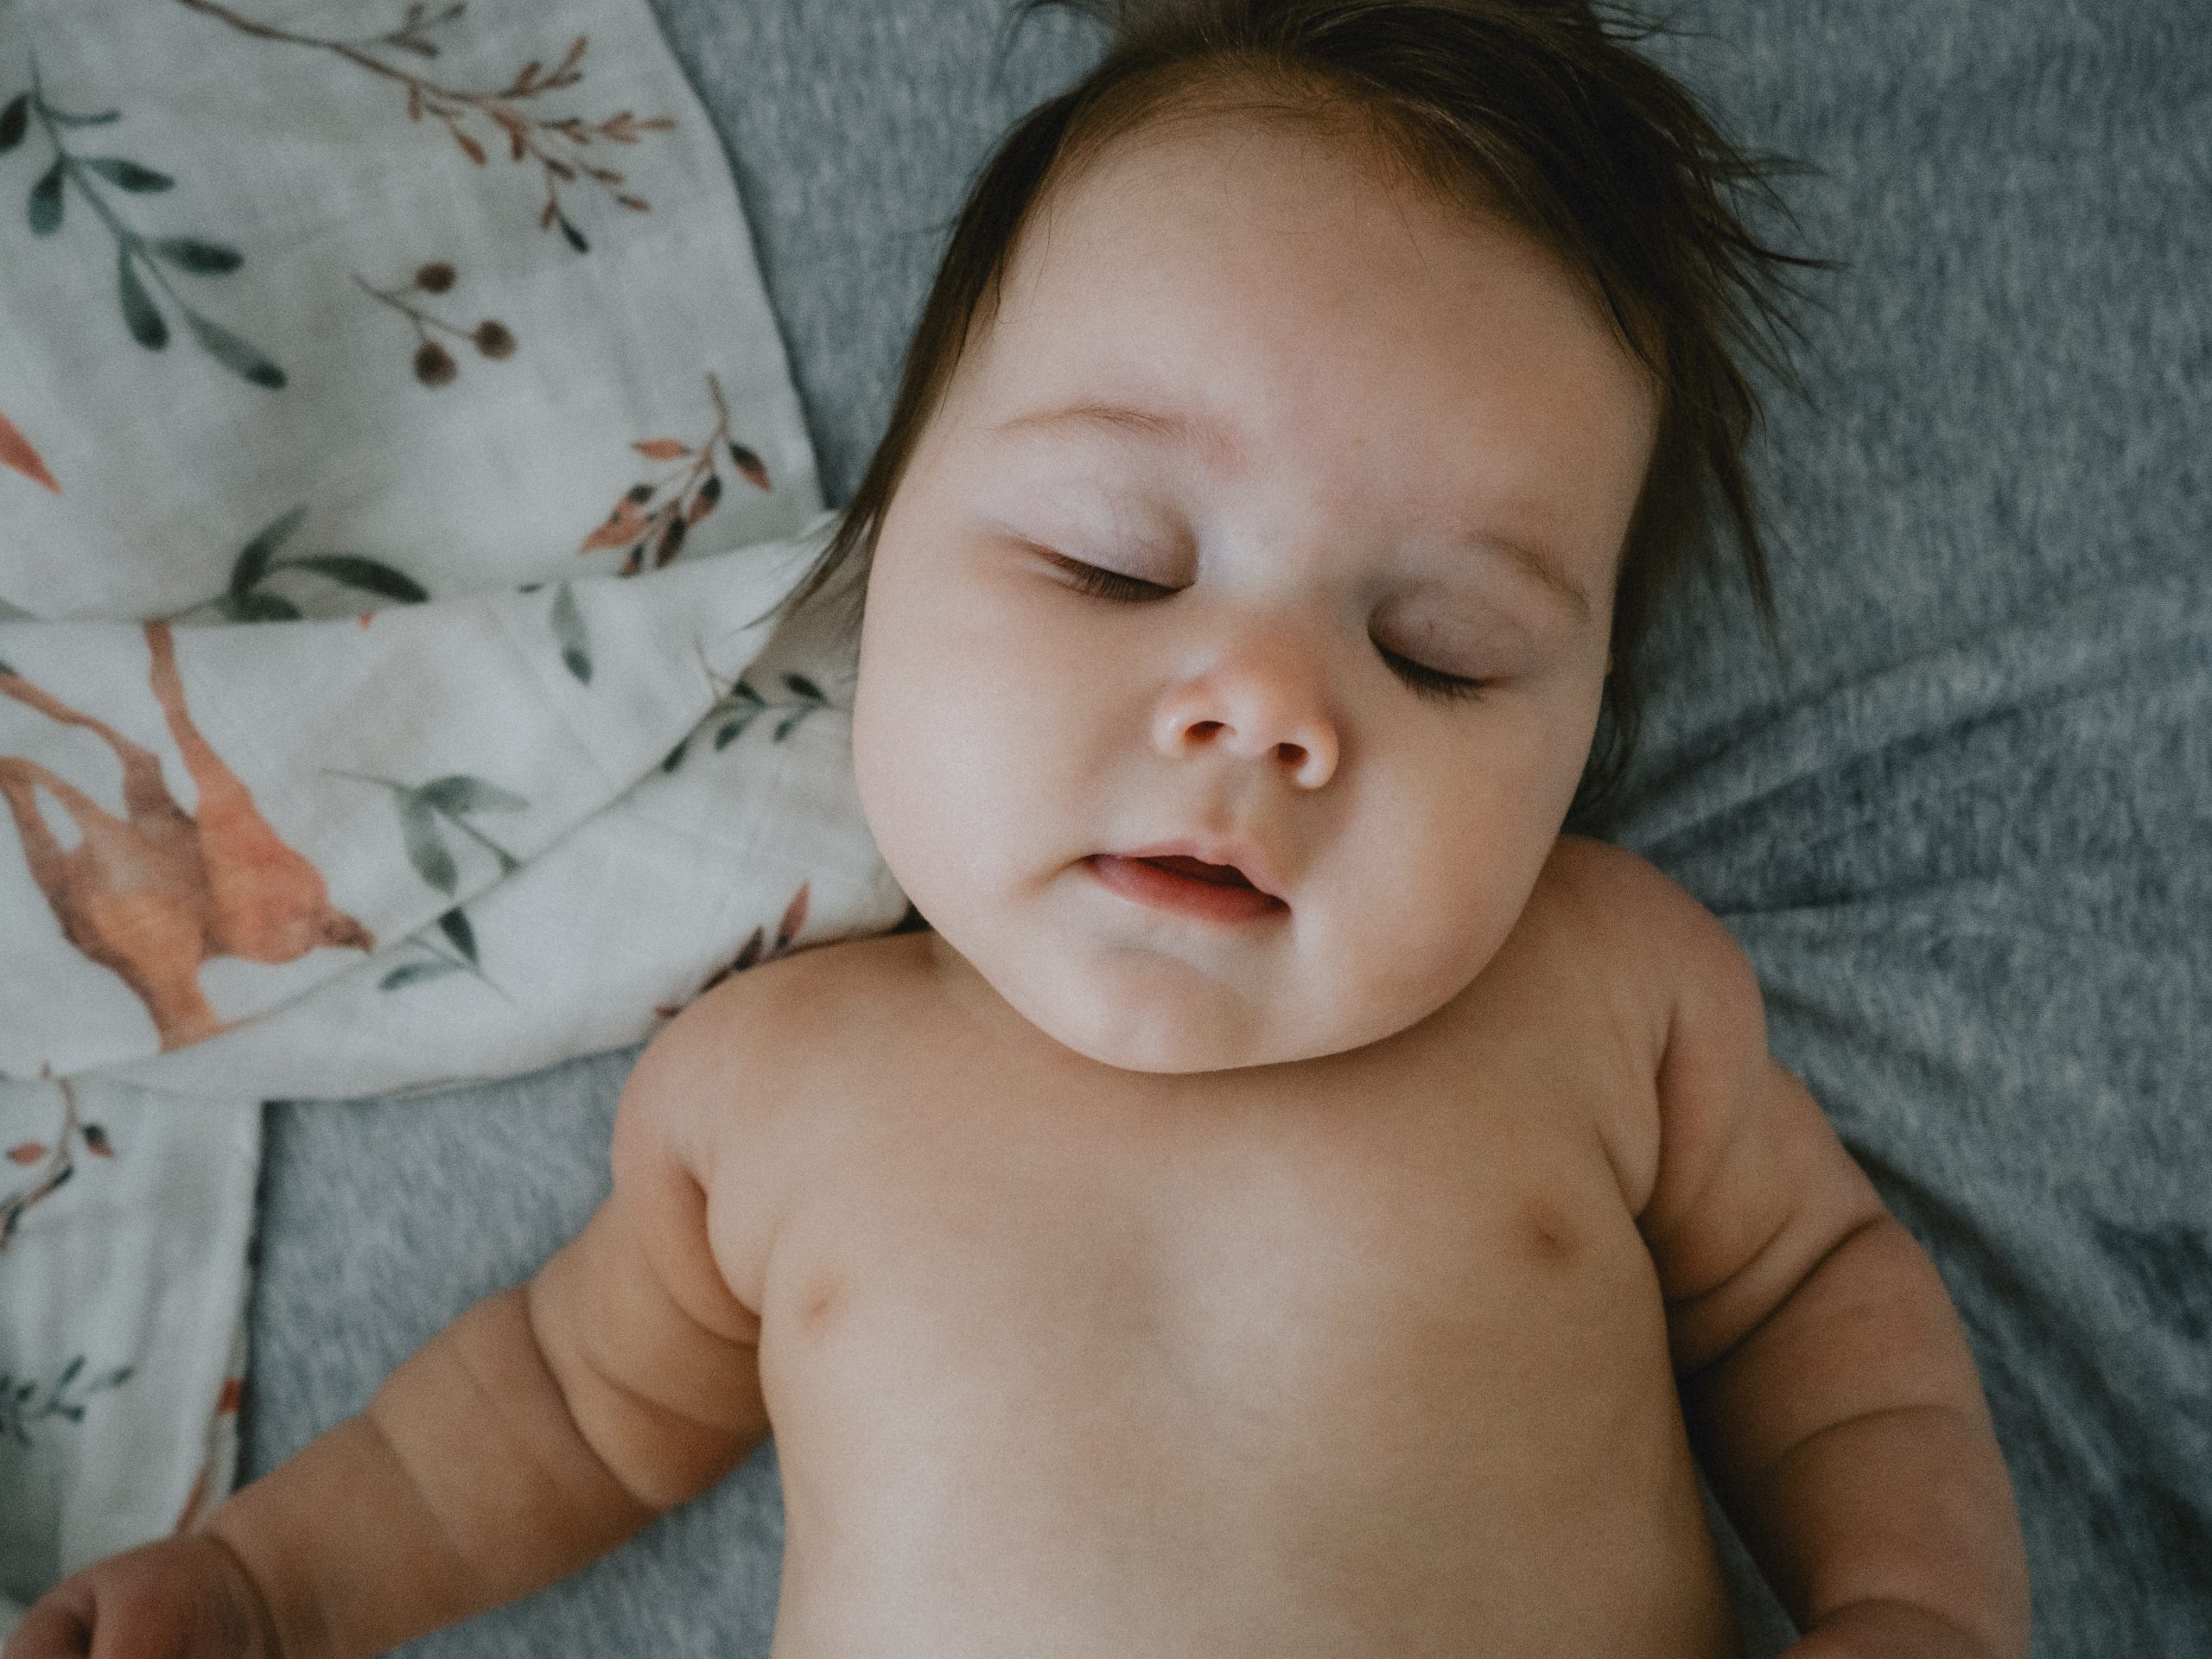 Vigilar al bebé cuando duerme